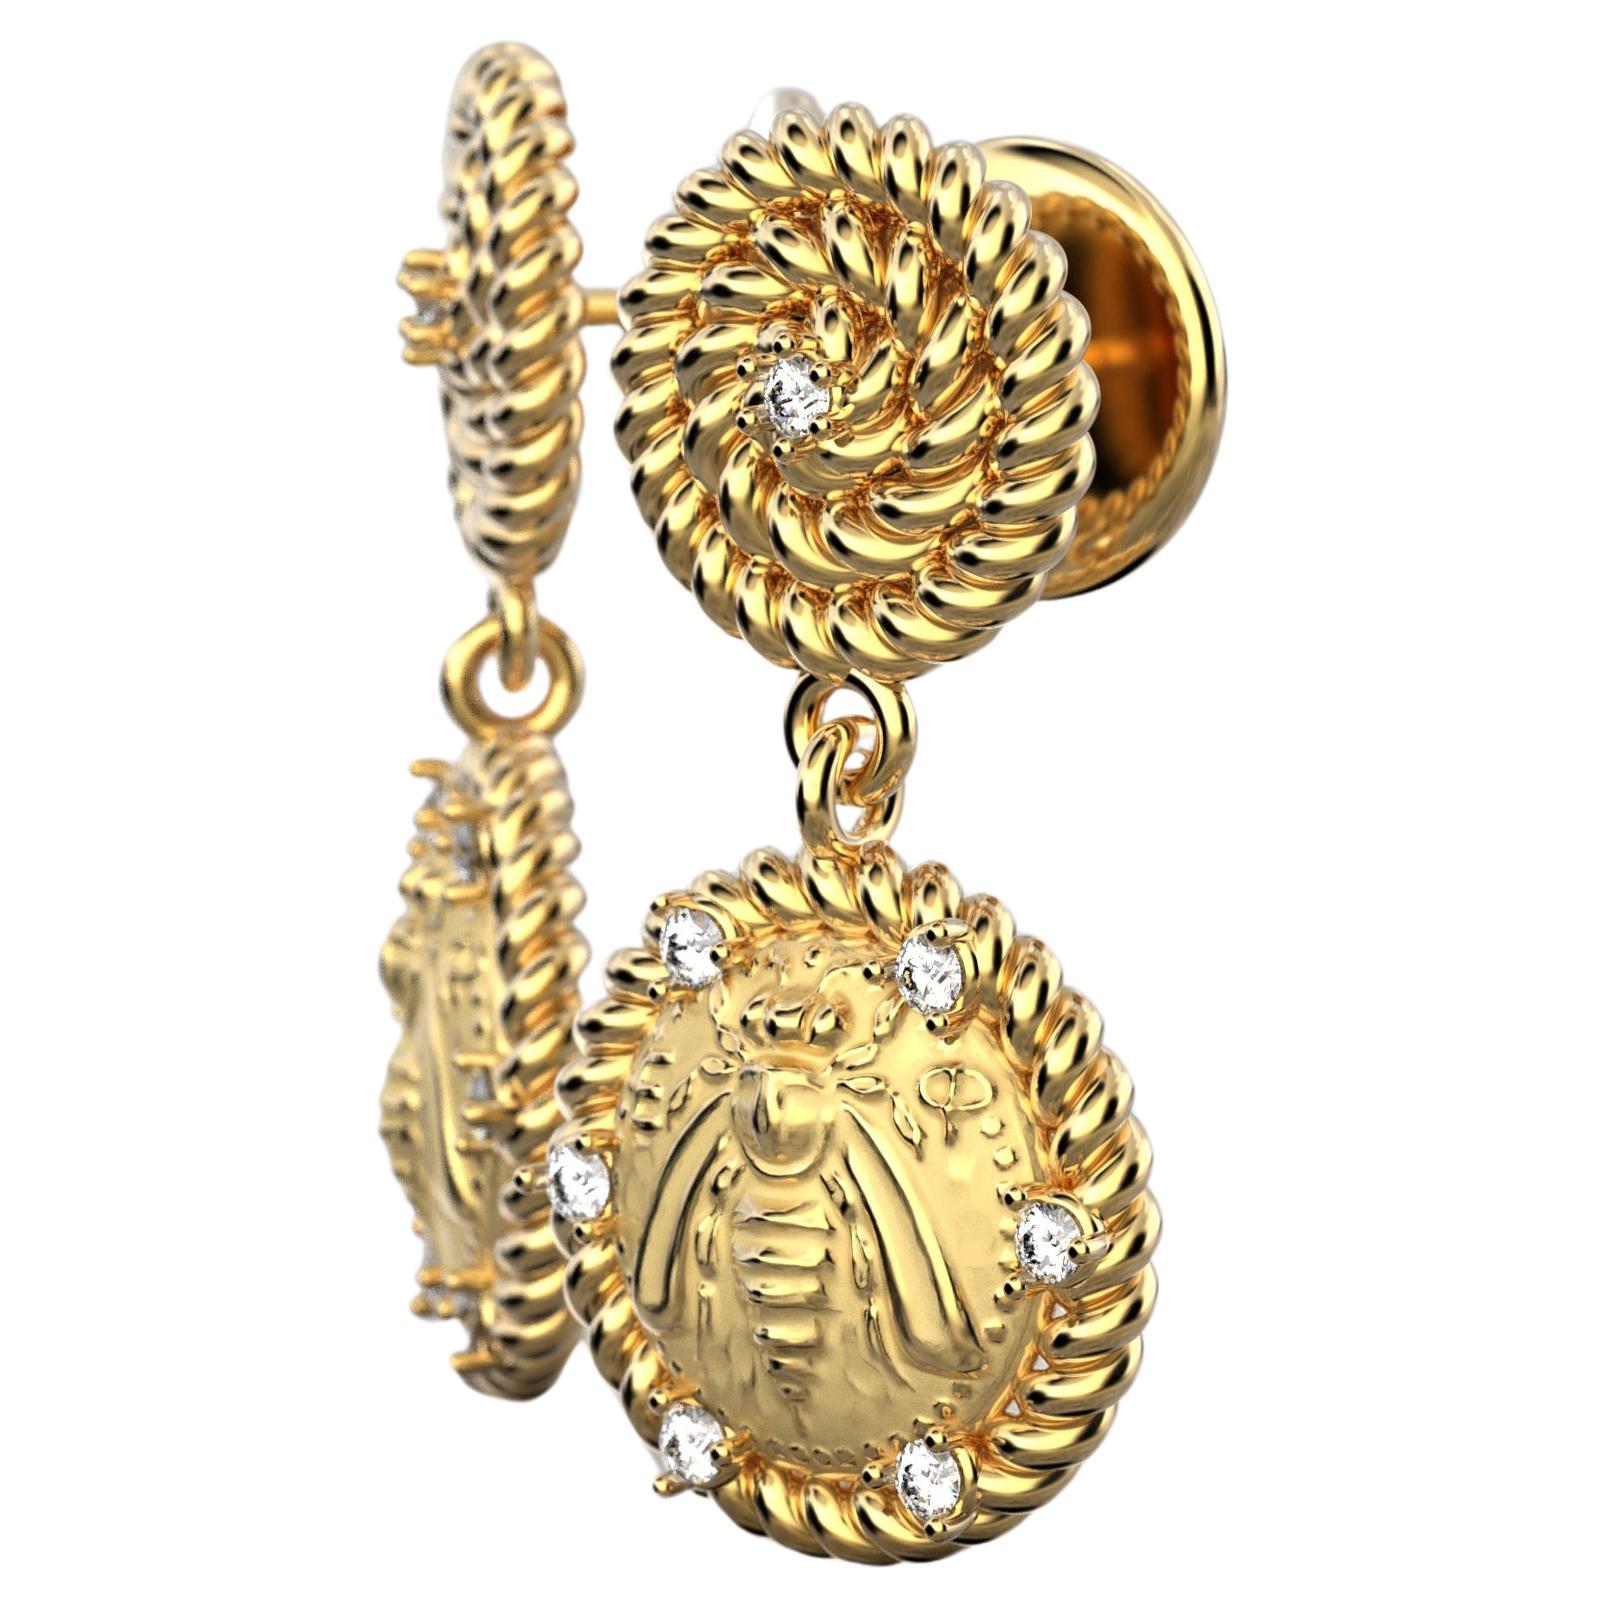 Hergestellt auf Bestellung in 14k Gold und Diamanten.
Schmücken Sie sich mit italienischen Perfektions-Diamanten-Ohrringen aus massivem 14-karätigem Gold, inspiriert vom antiken griechischen Stil. Diese exquisiten, in Italien gefertigten